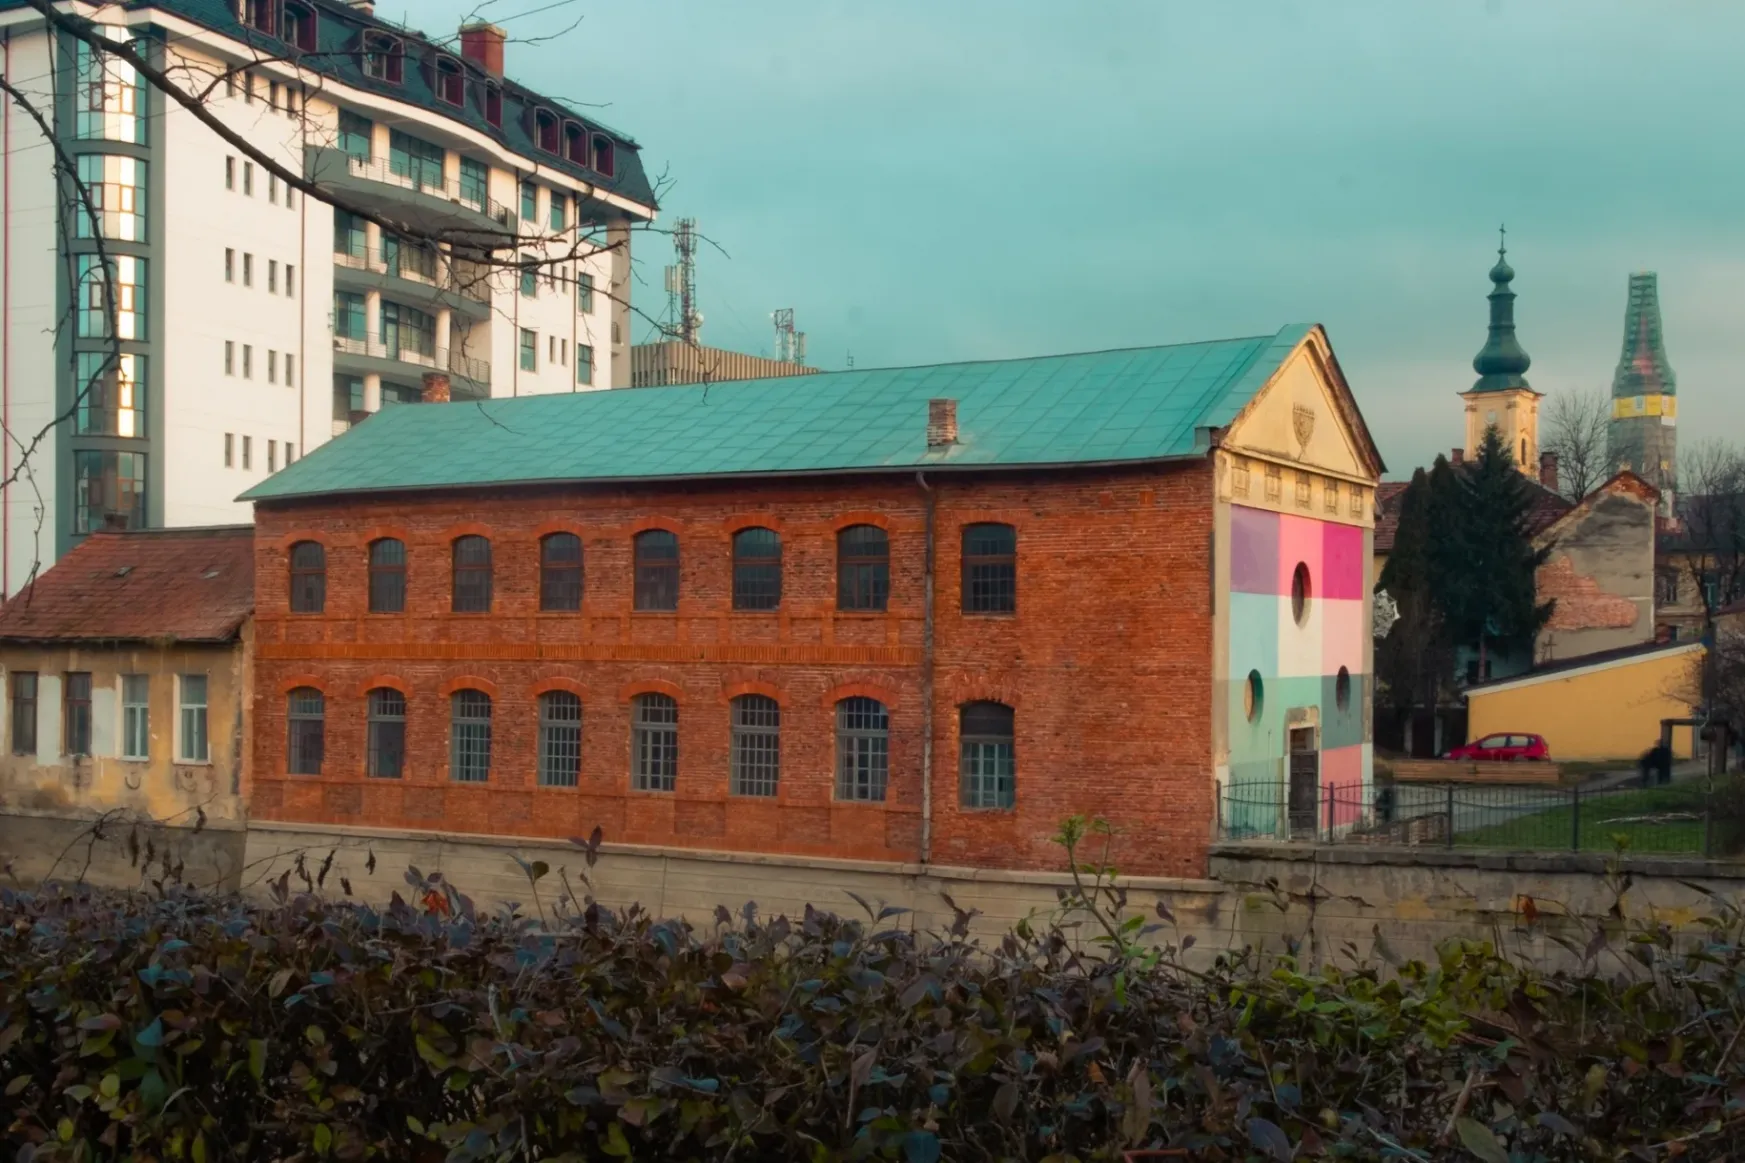 25
éves a Tranzit Ház, Kolozsvár egyik legrégebbi független
kulturális intézménye